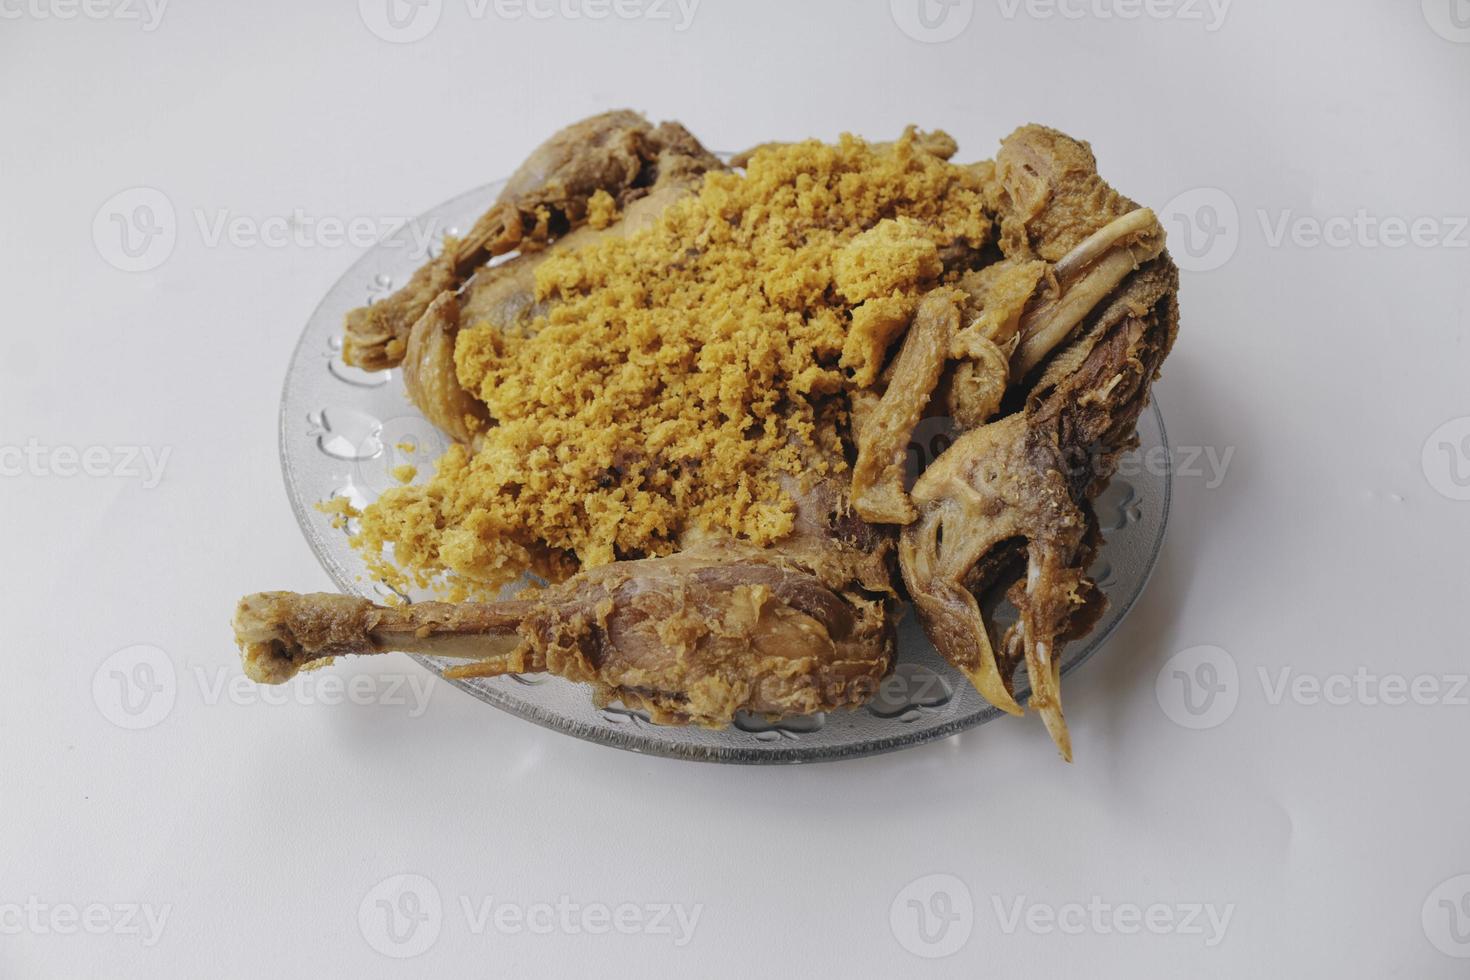 el pollo ingkung generalmente se sirve en una taza grande como una variedad de eventos y celebraciones tradicionales en java, como ceremonias religiosas. foto